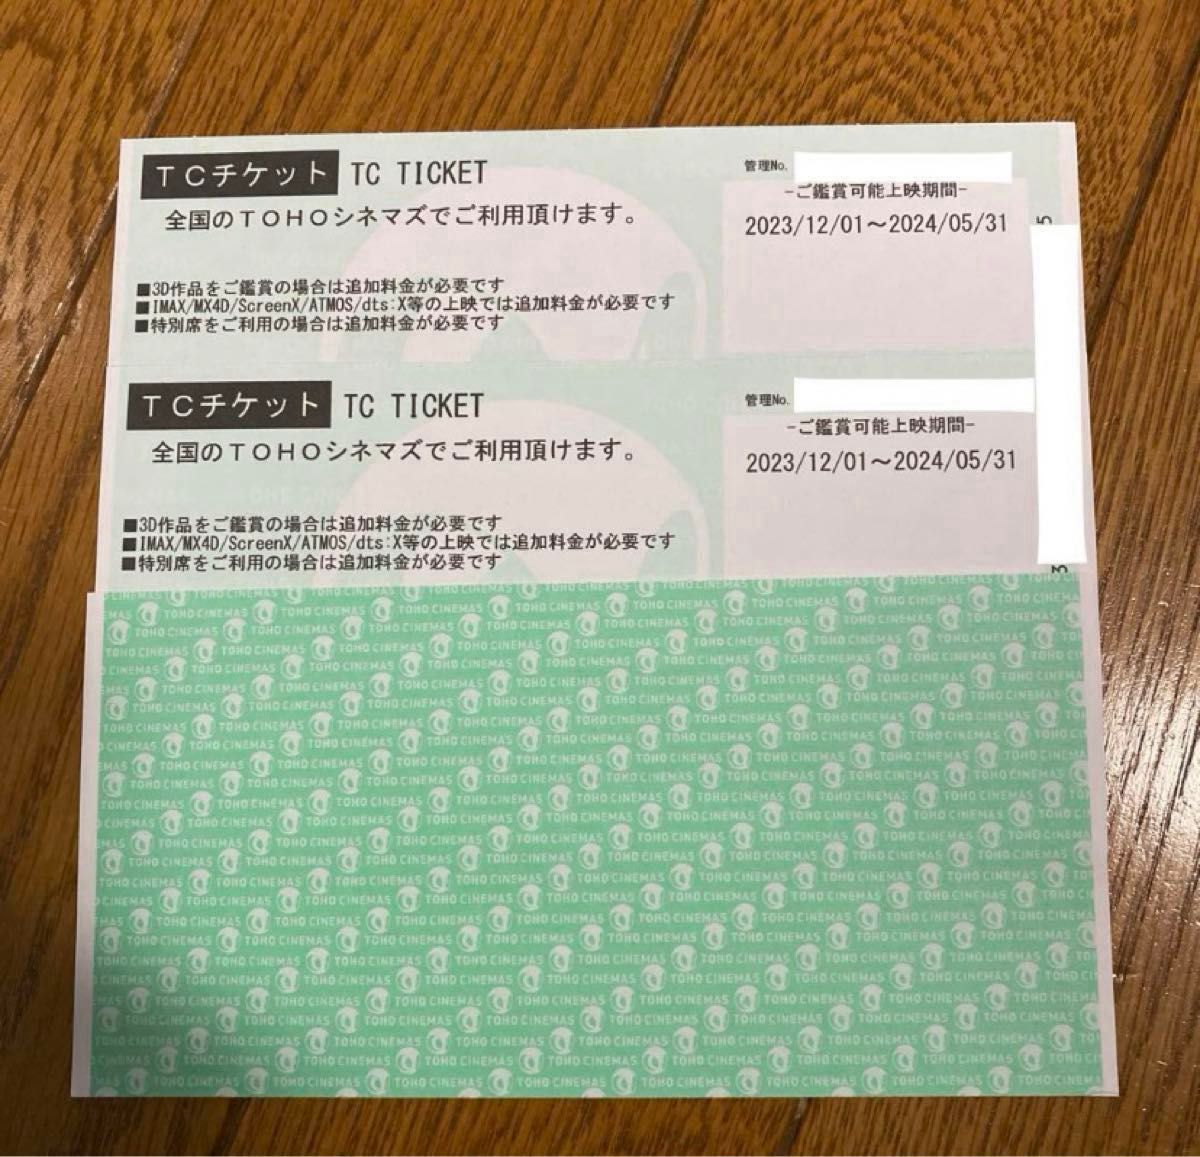 TOHOシネマズ 映画チケット 鑑賞券 2枚